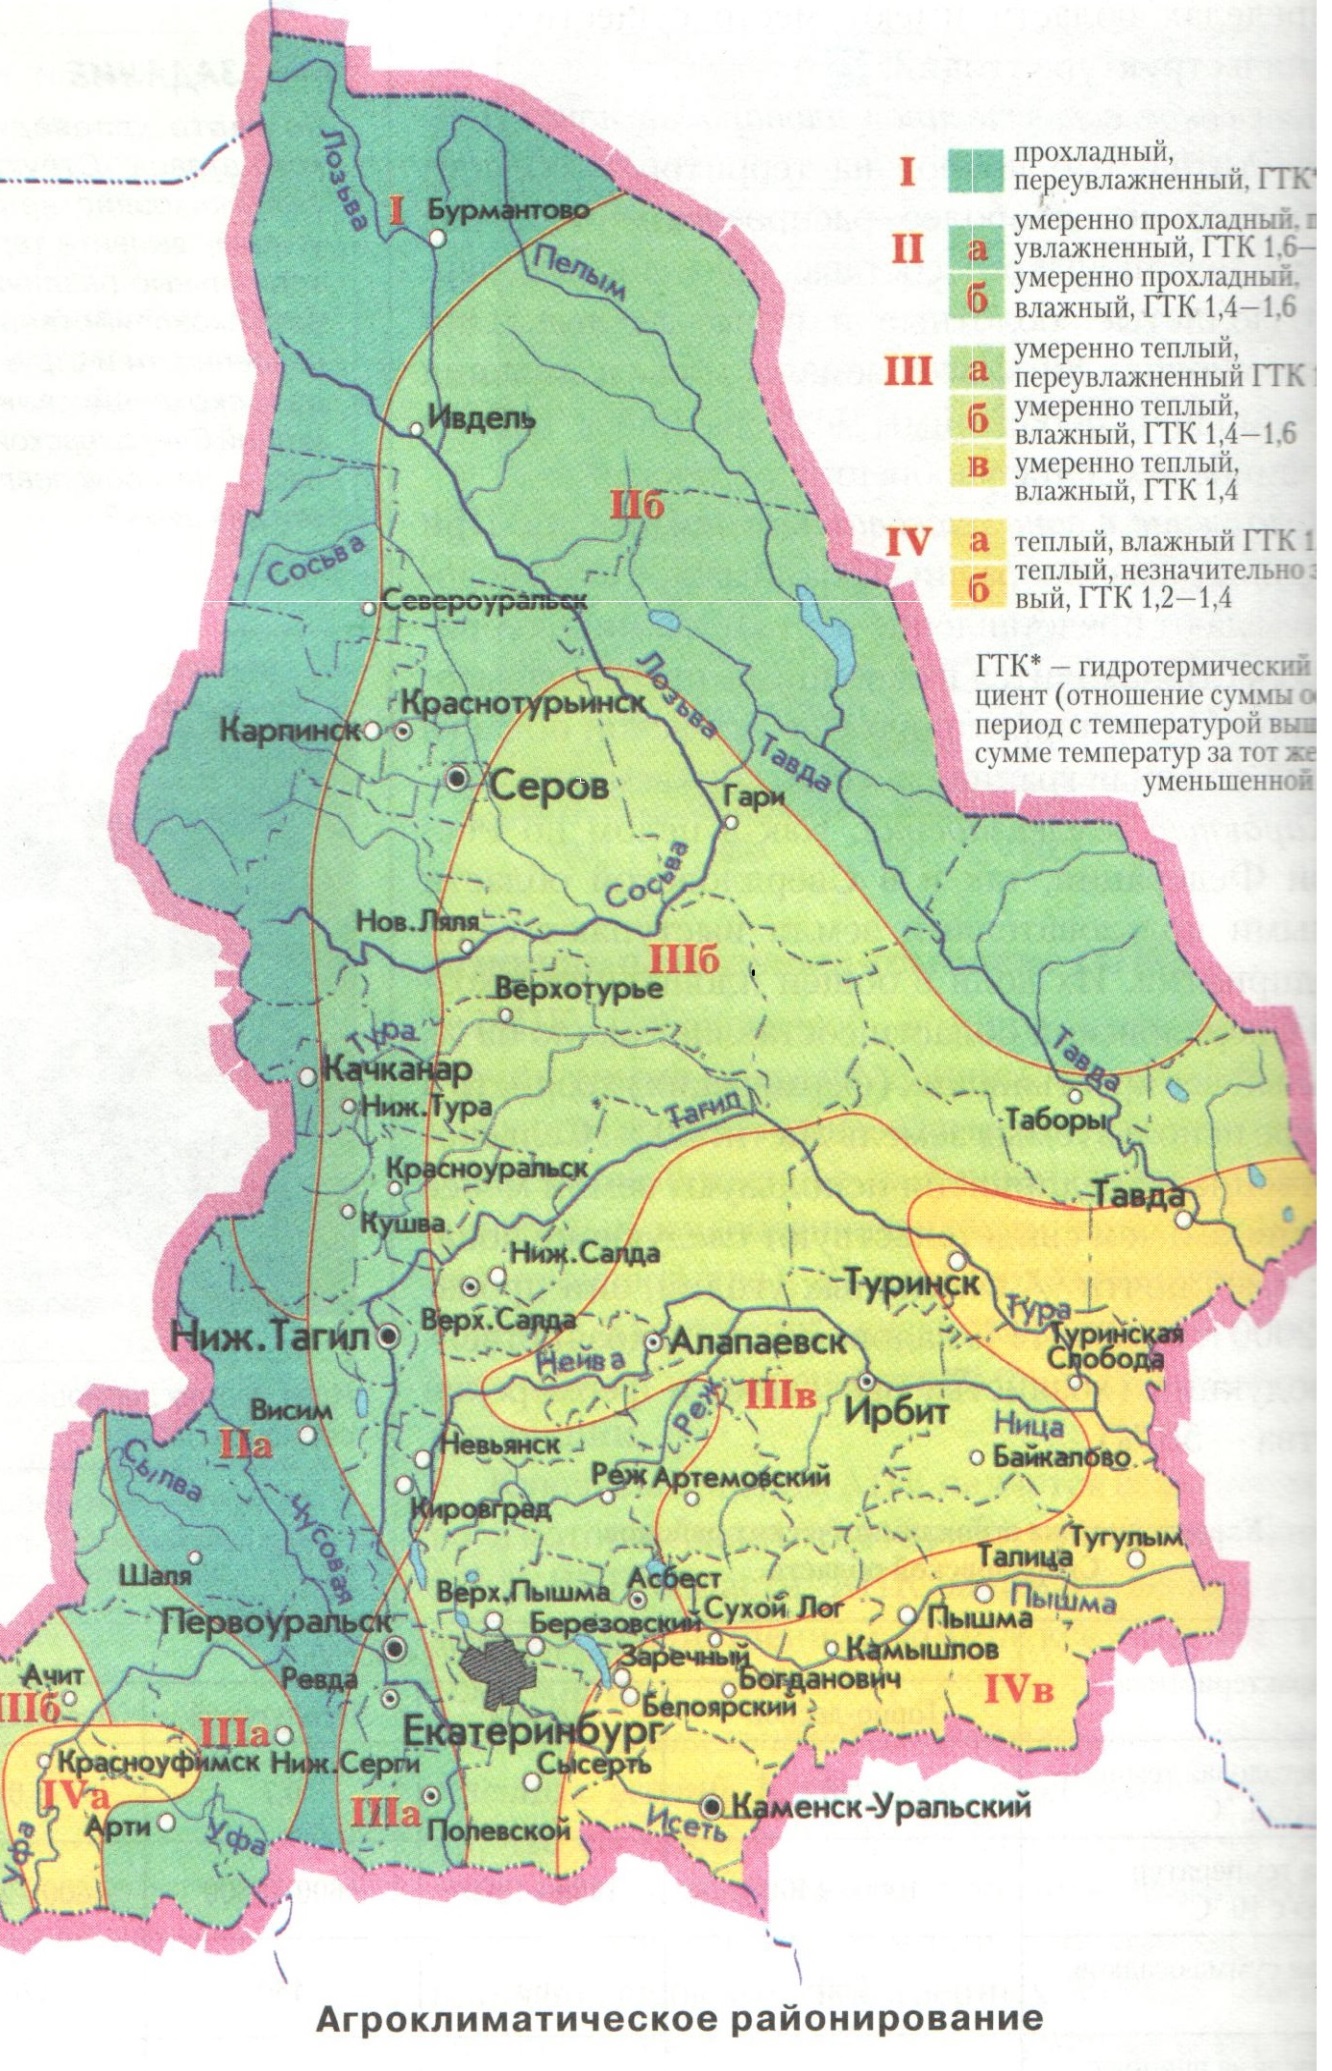 Дорожная карта свердловской области